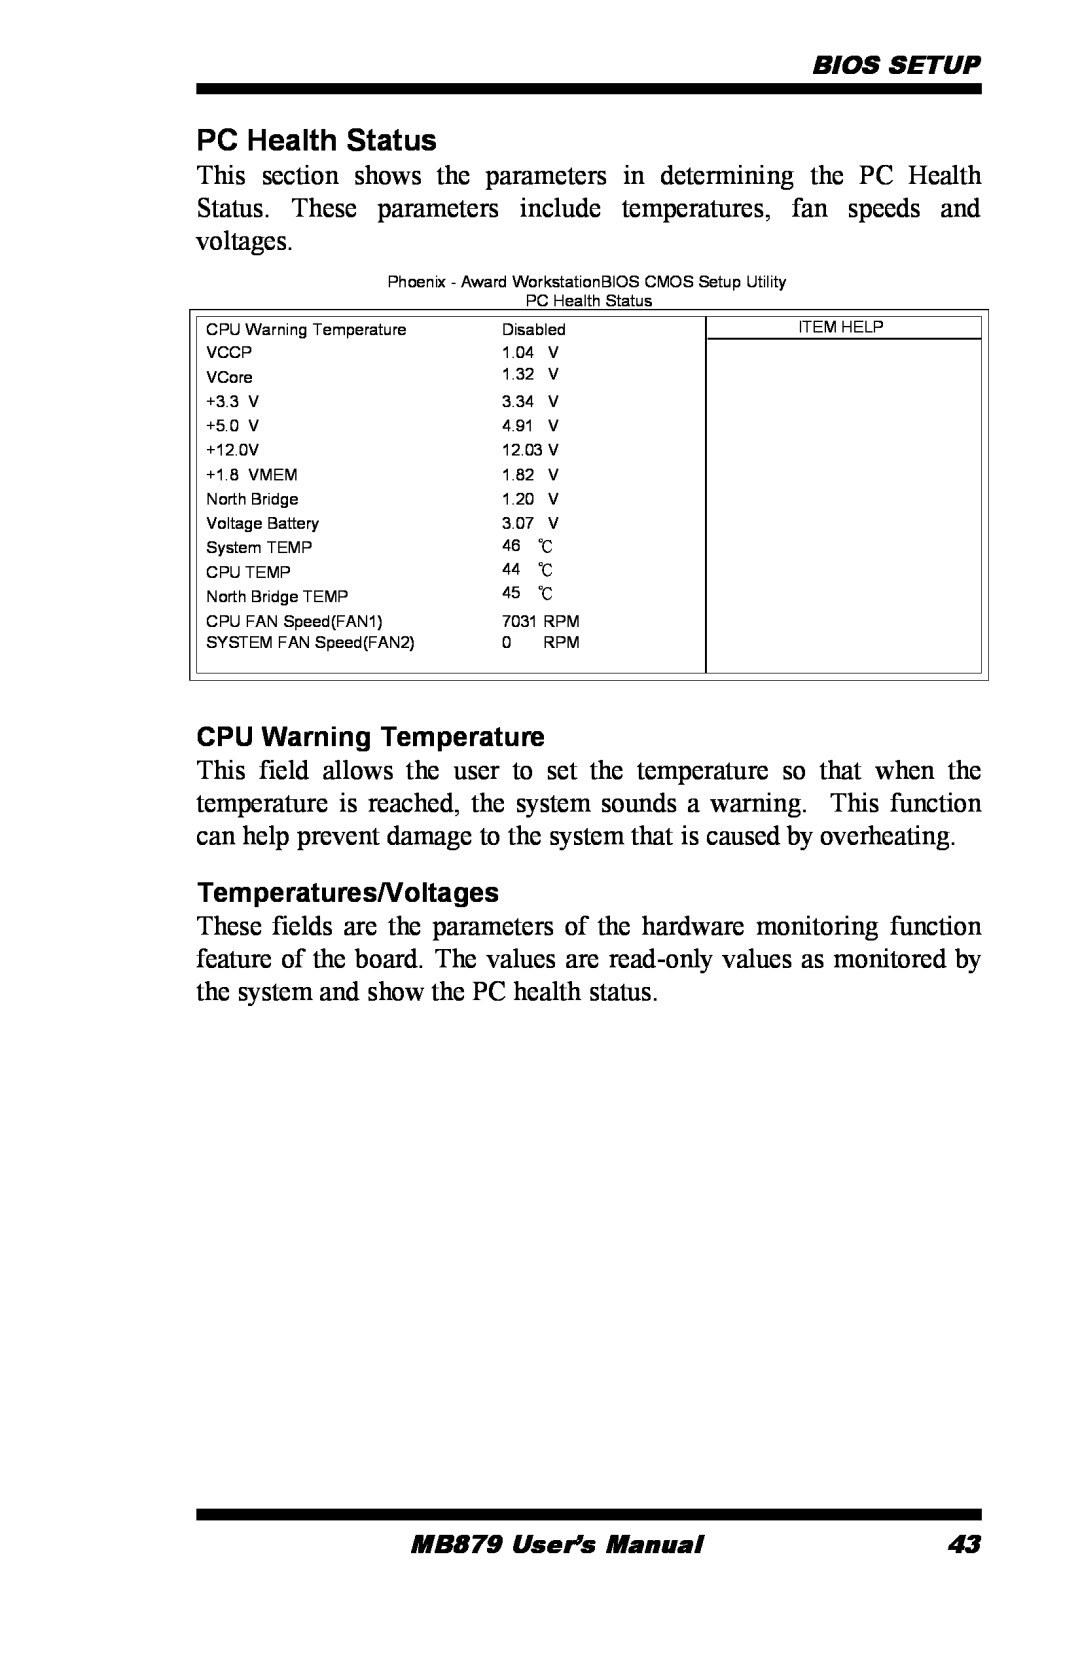 Intel MB879 user manual PC Health Status, CPU Warning Temperature, Temperatures/Voltages 